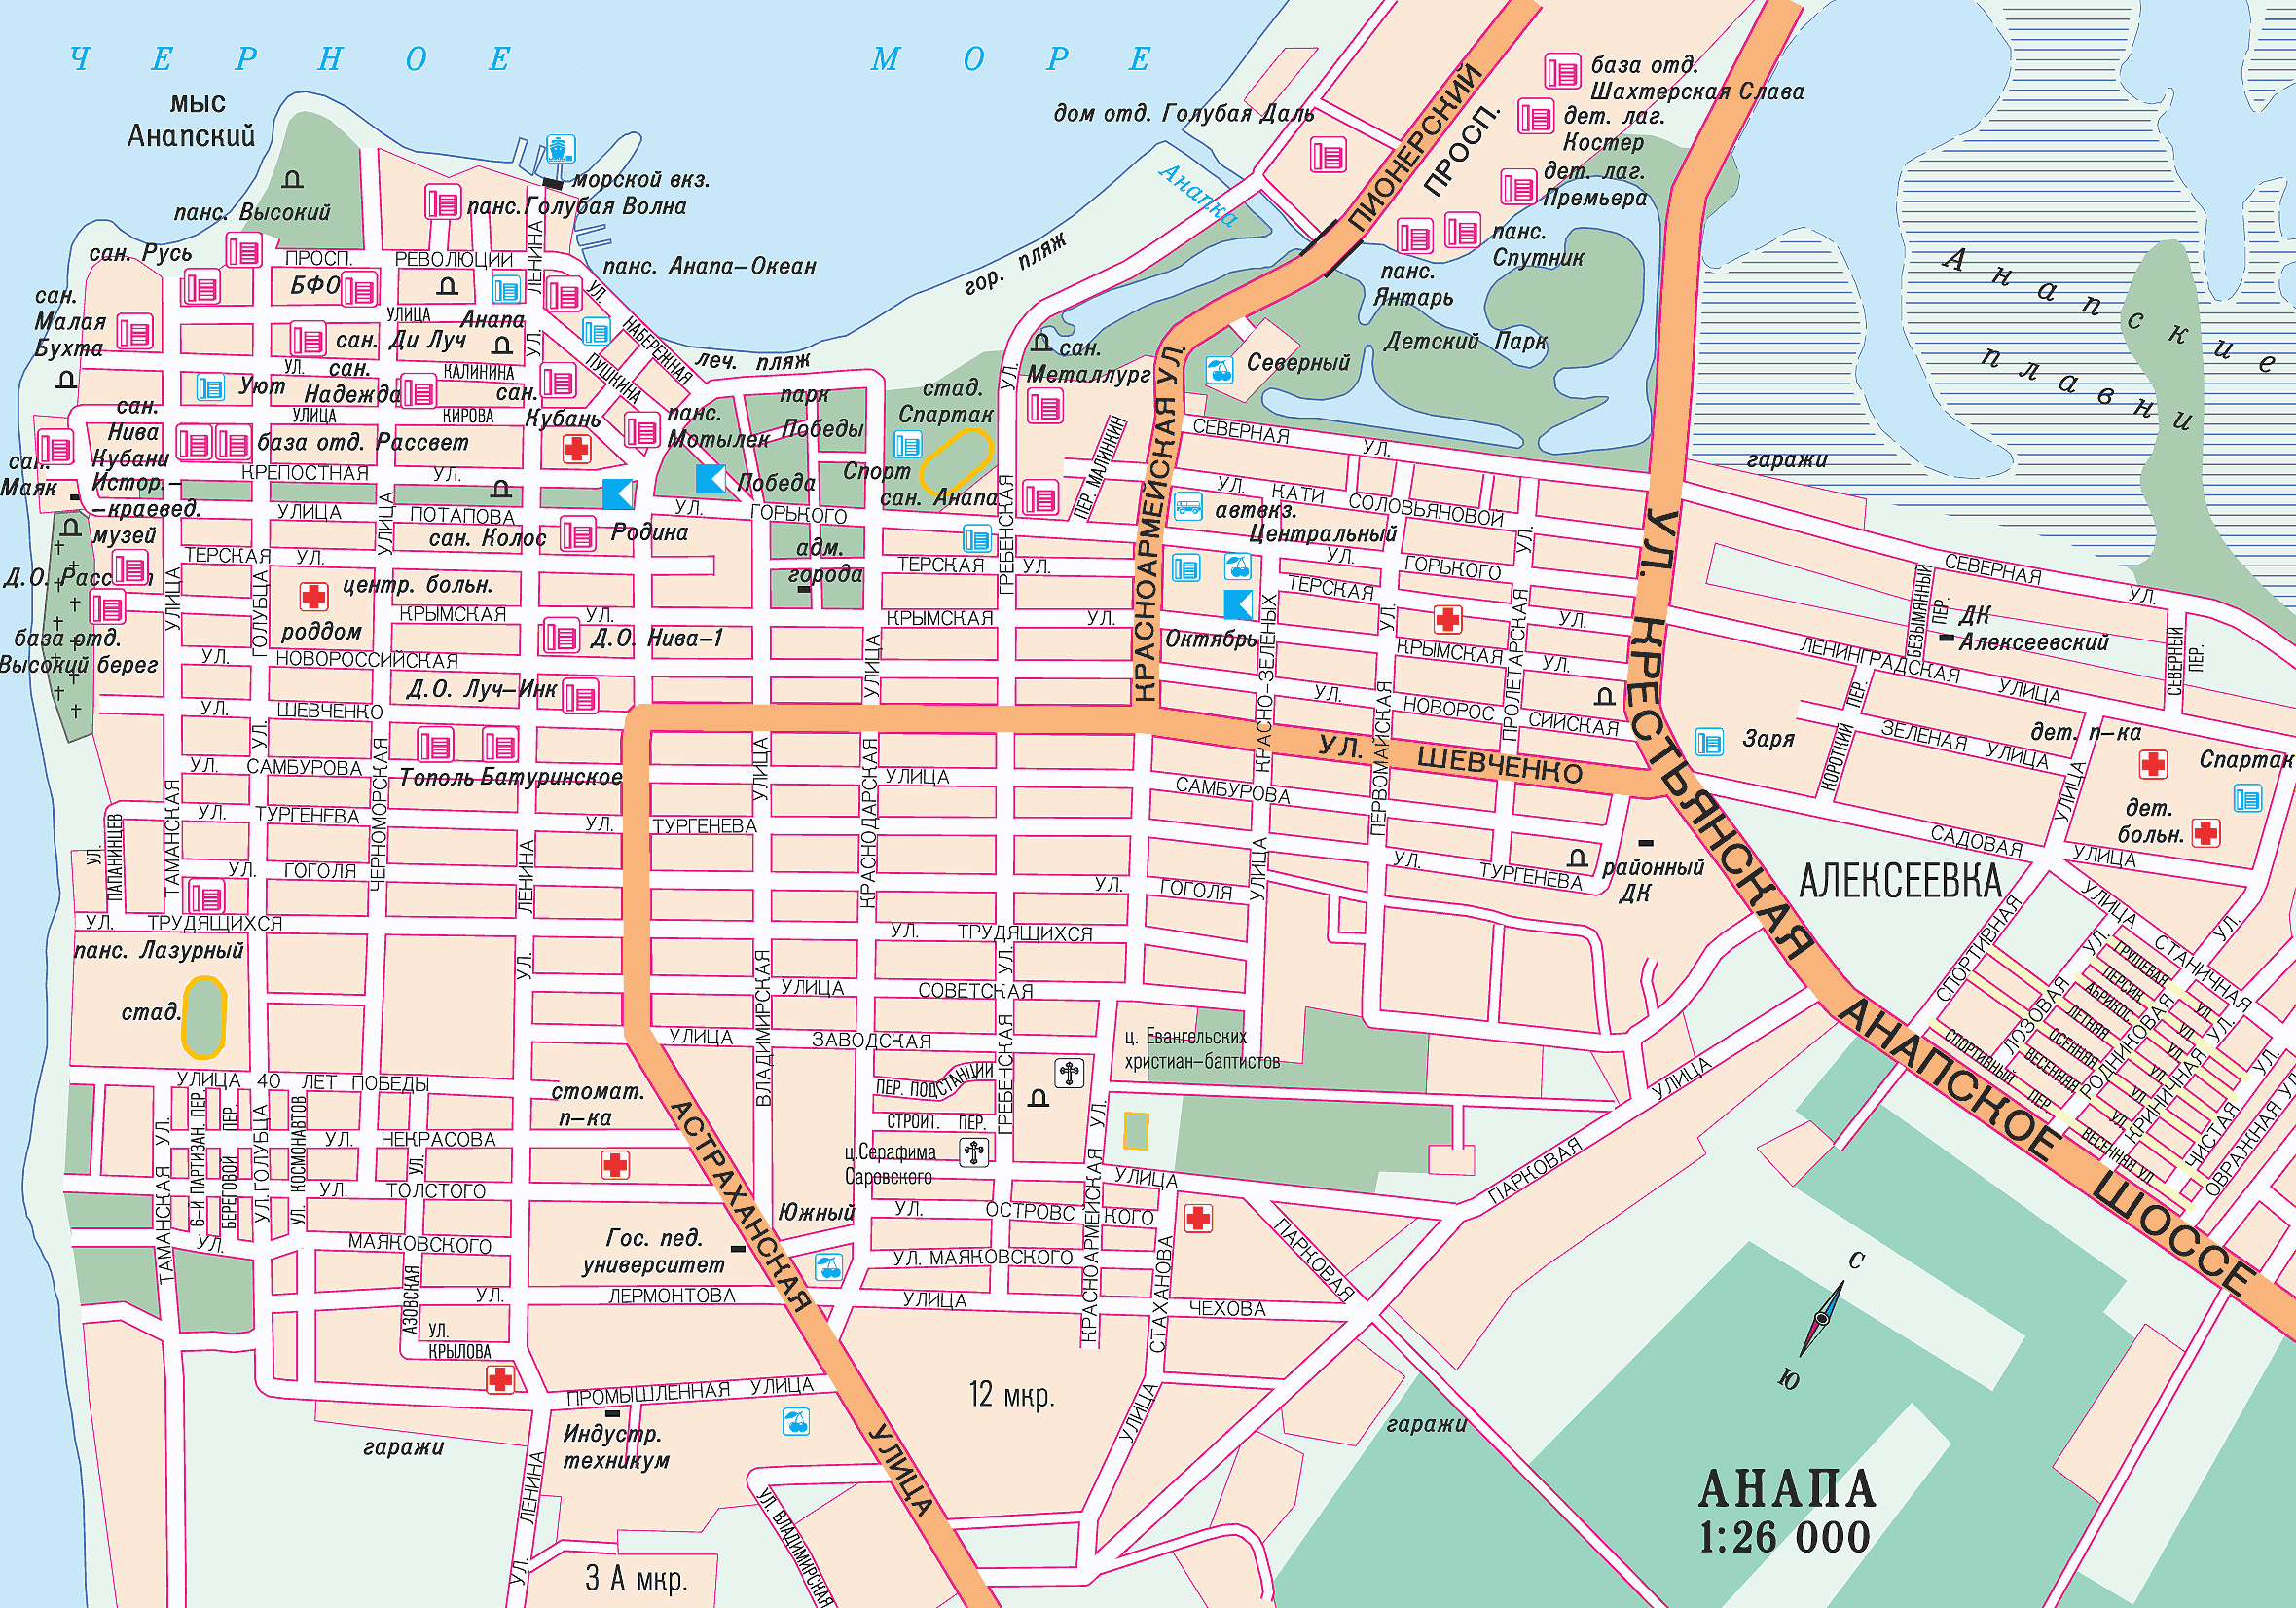 Map of Anapa